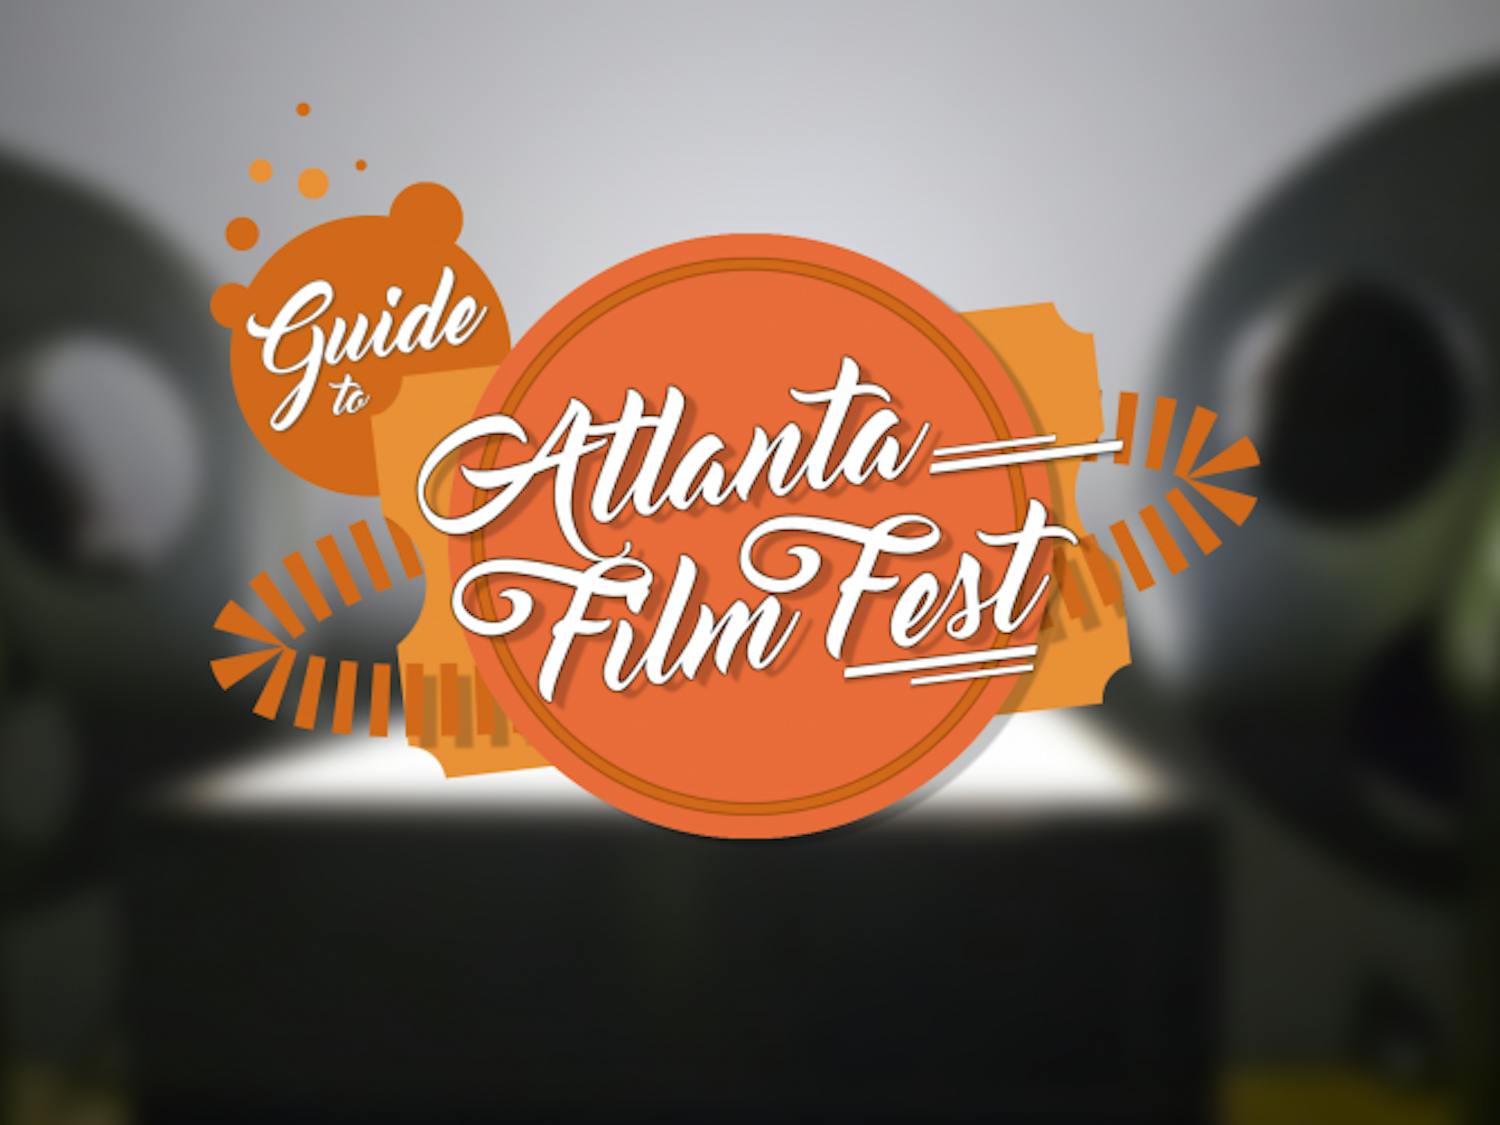 Atlanta Film Fest graphic